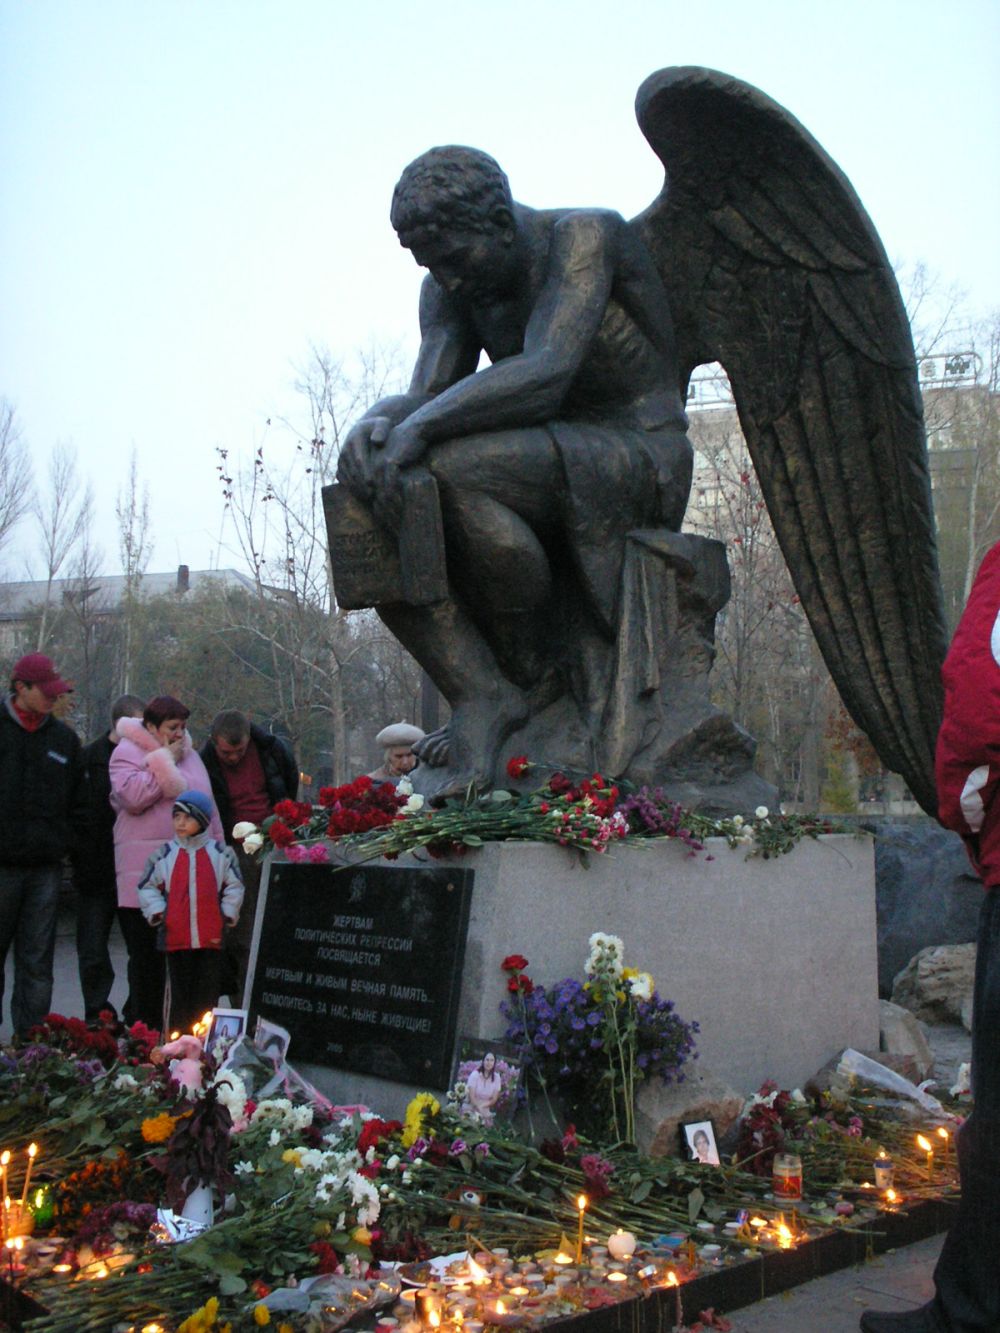 Mahnmal für die Opfer der politischen Repression „Trauernder Engel“, Urheber: Трубин Валера, Lizenz: CC-BY-SA 3.0